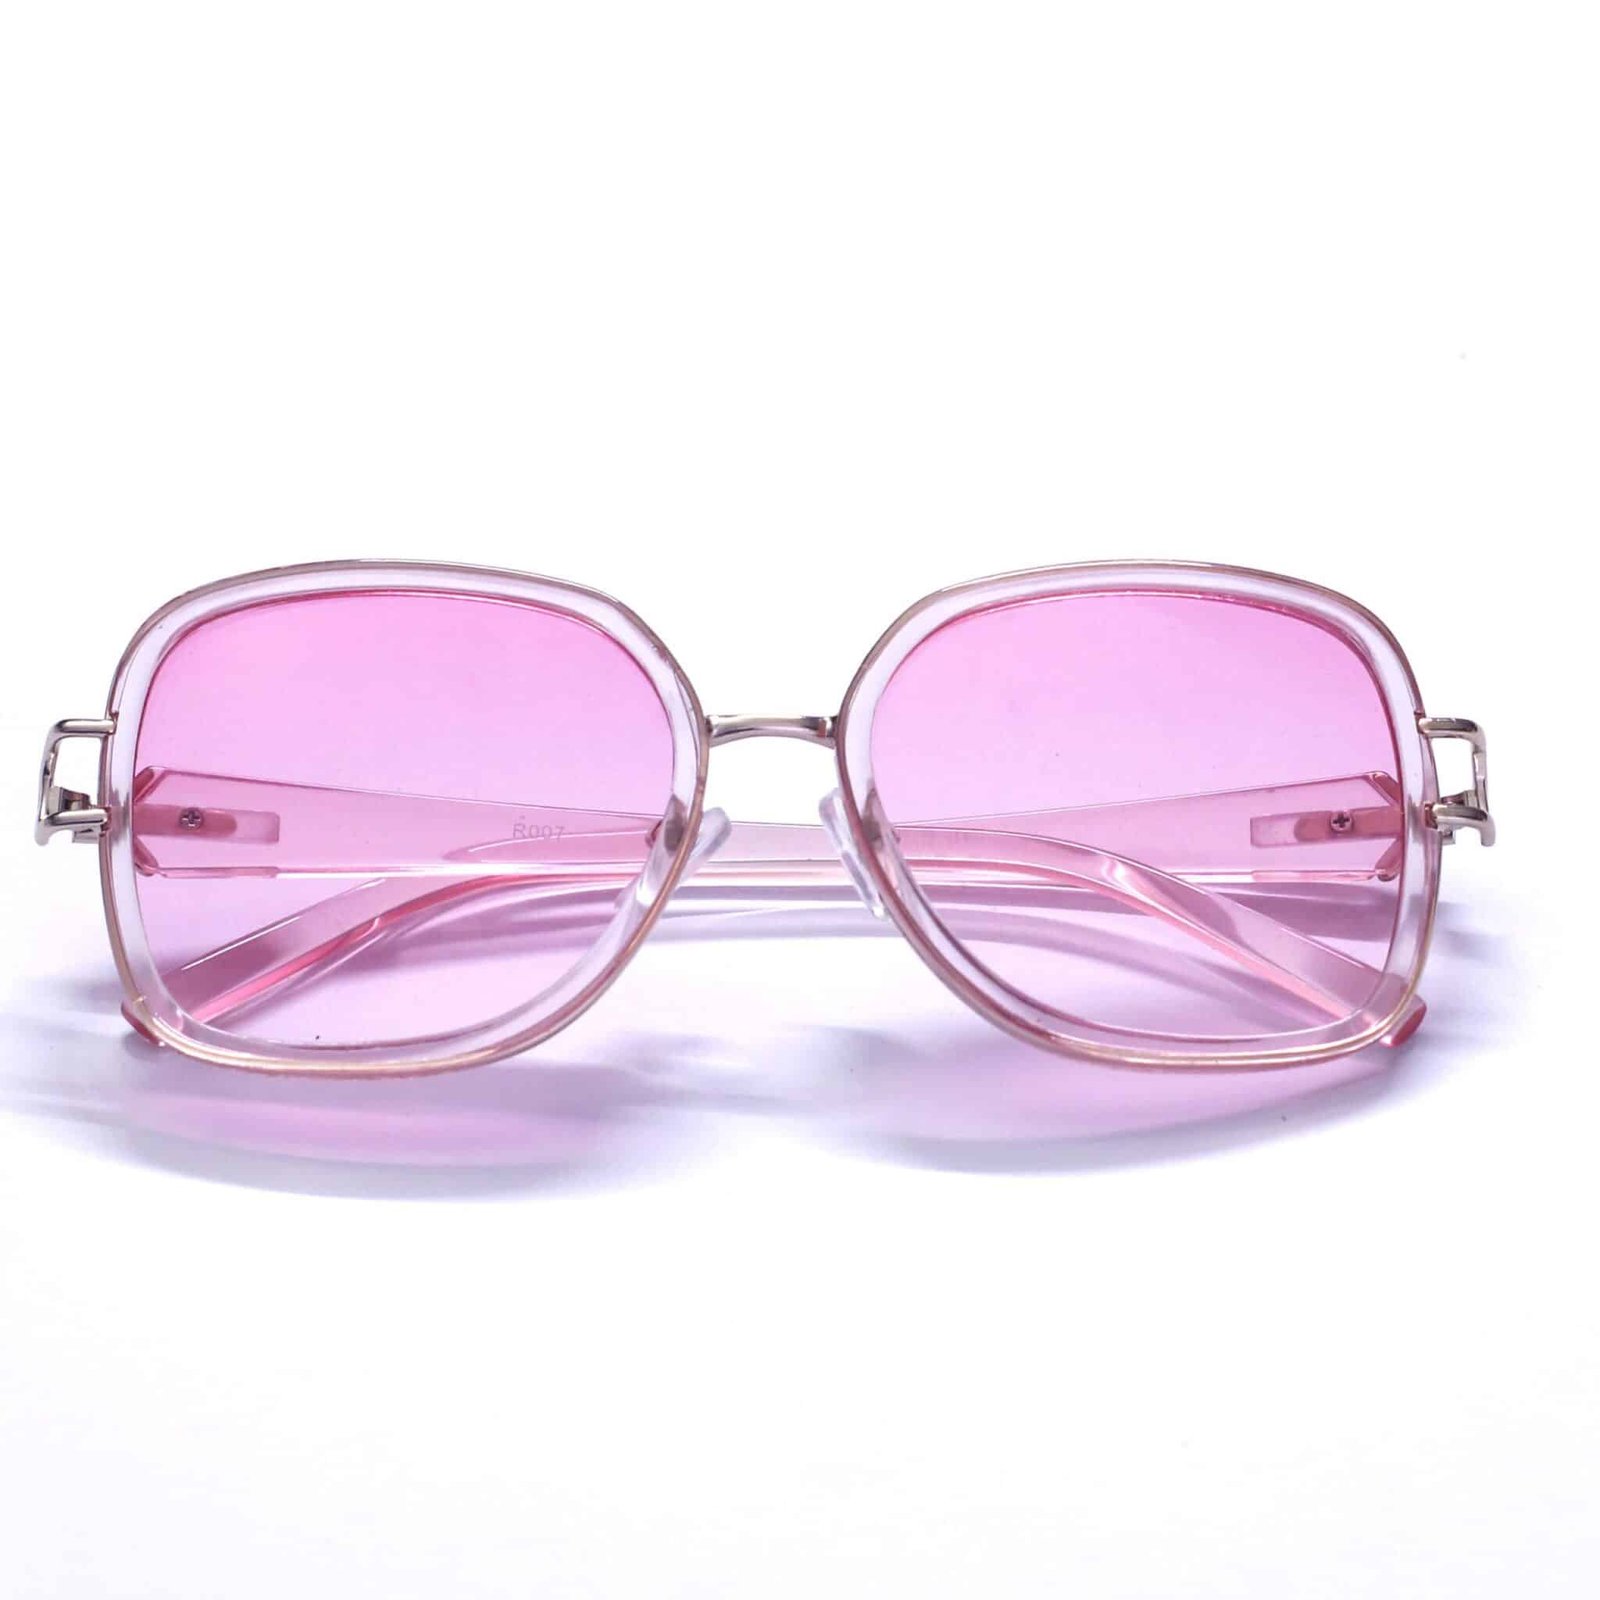 Geometric-frame sunglasses in pink acetate | GUCCI® US